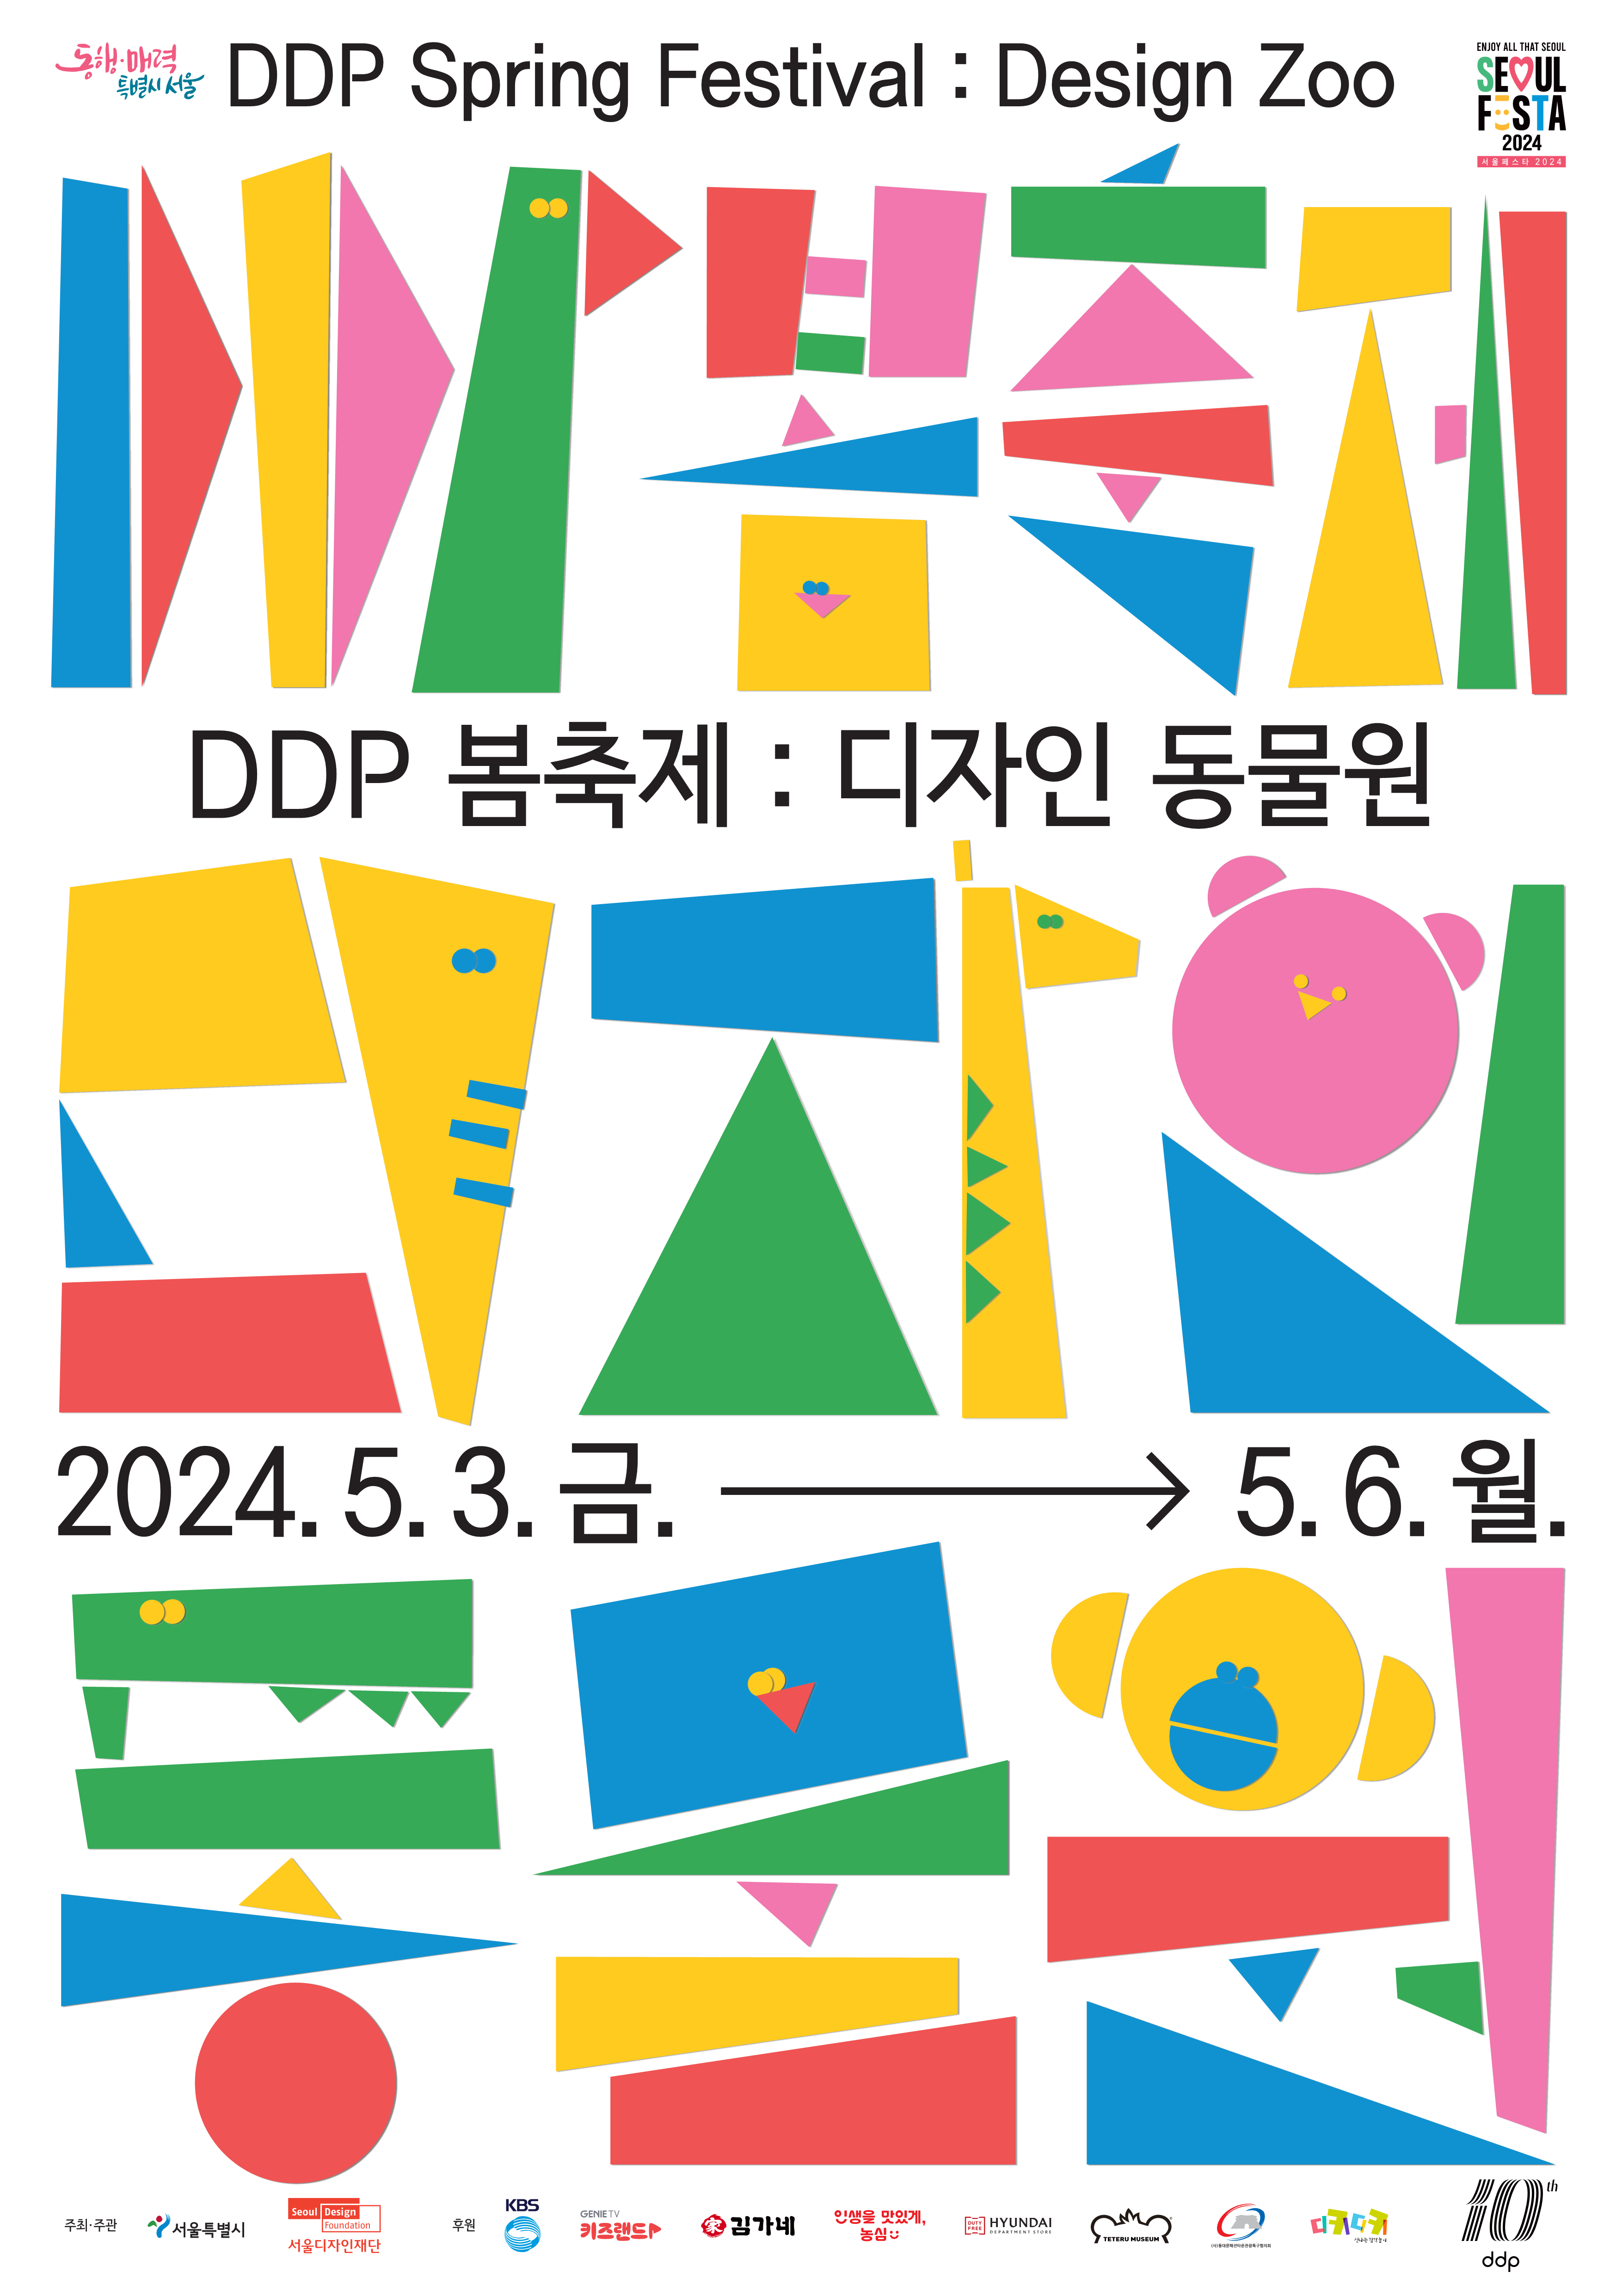 [2024 DDP 봄축제:디자인 동물원] 디자인 마켓 셀러 모집 공고 DDP Spring Festival: Design Zoo 2024.5.3.금.-5.6.월